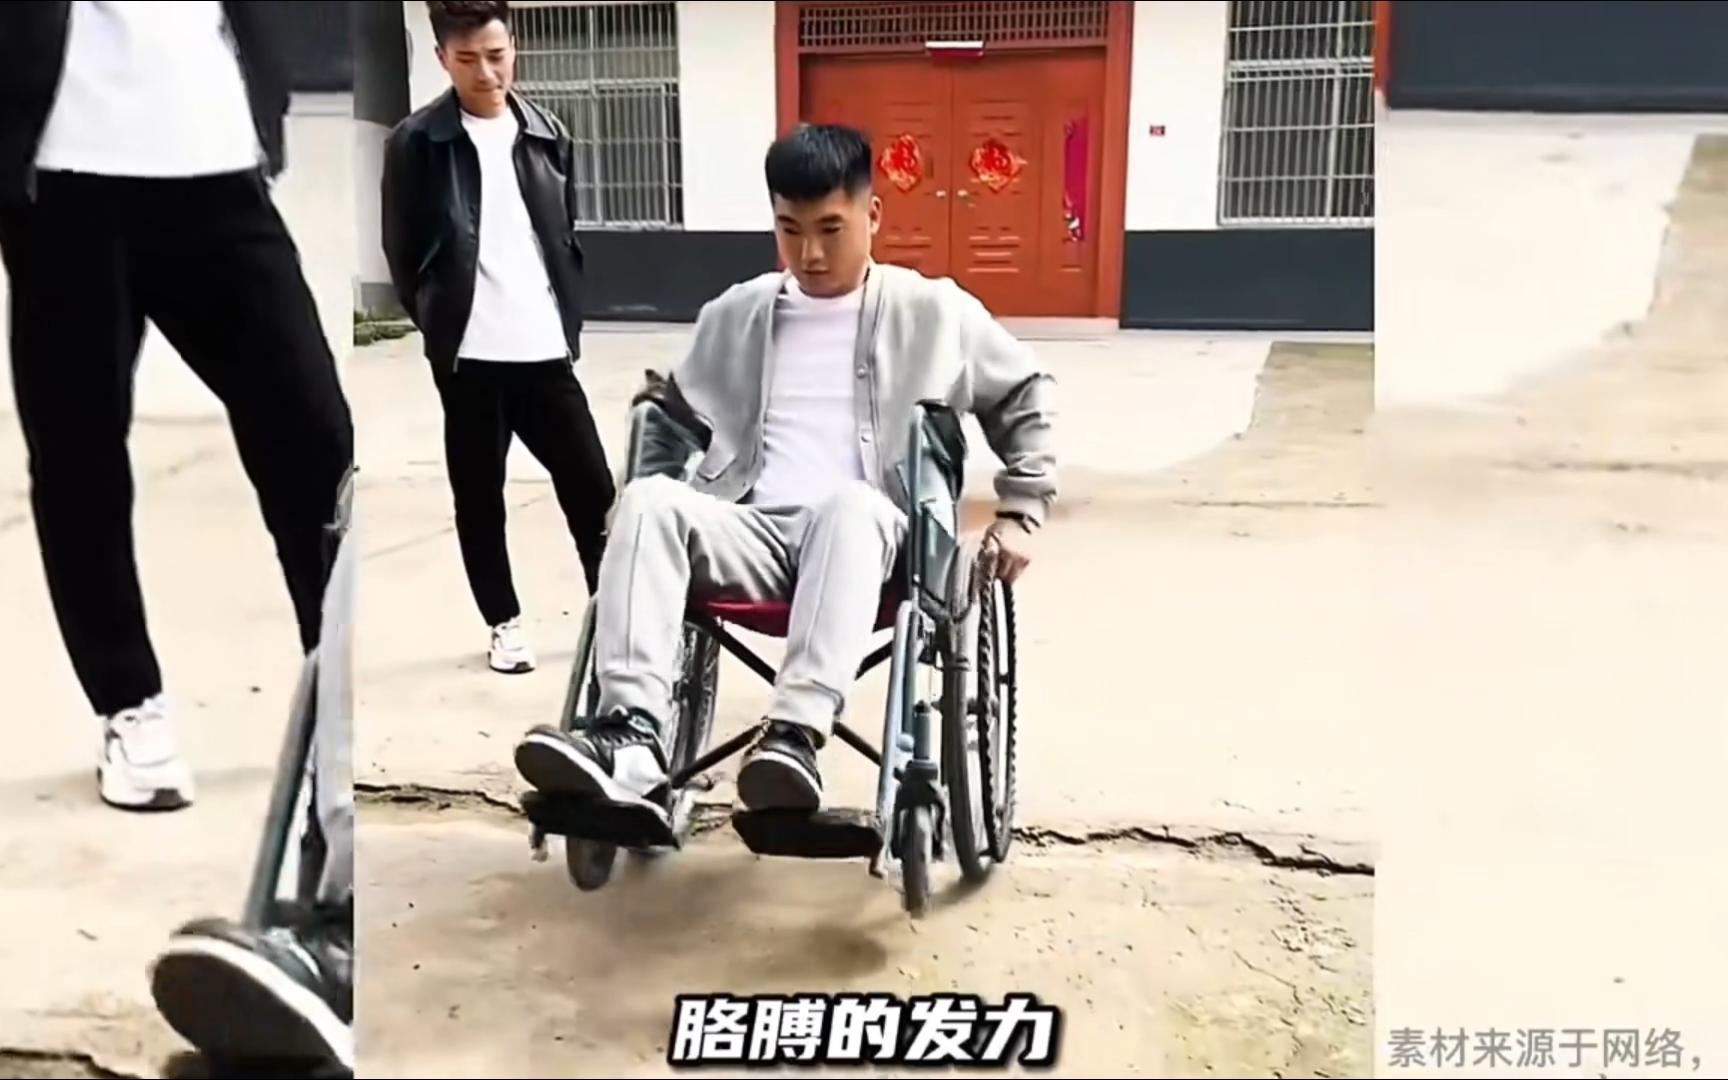 论!坐轮椅胳膊发力的重要性!